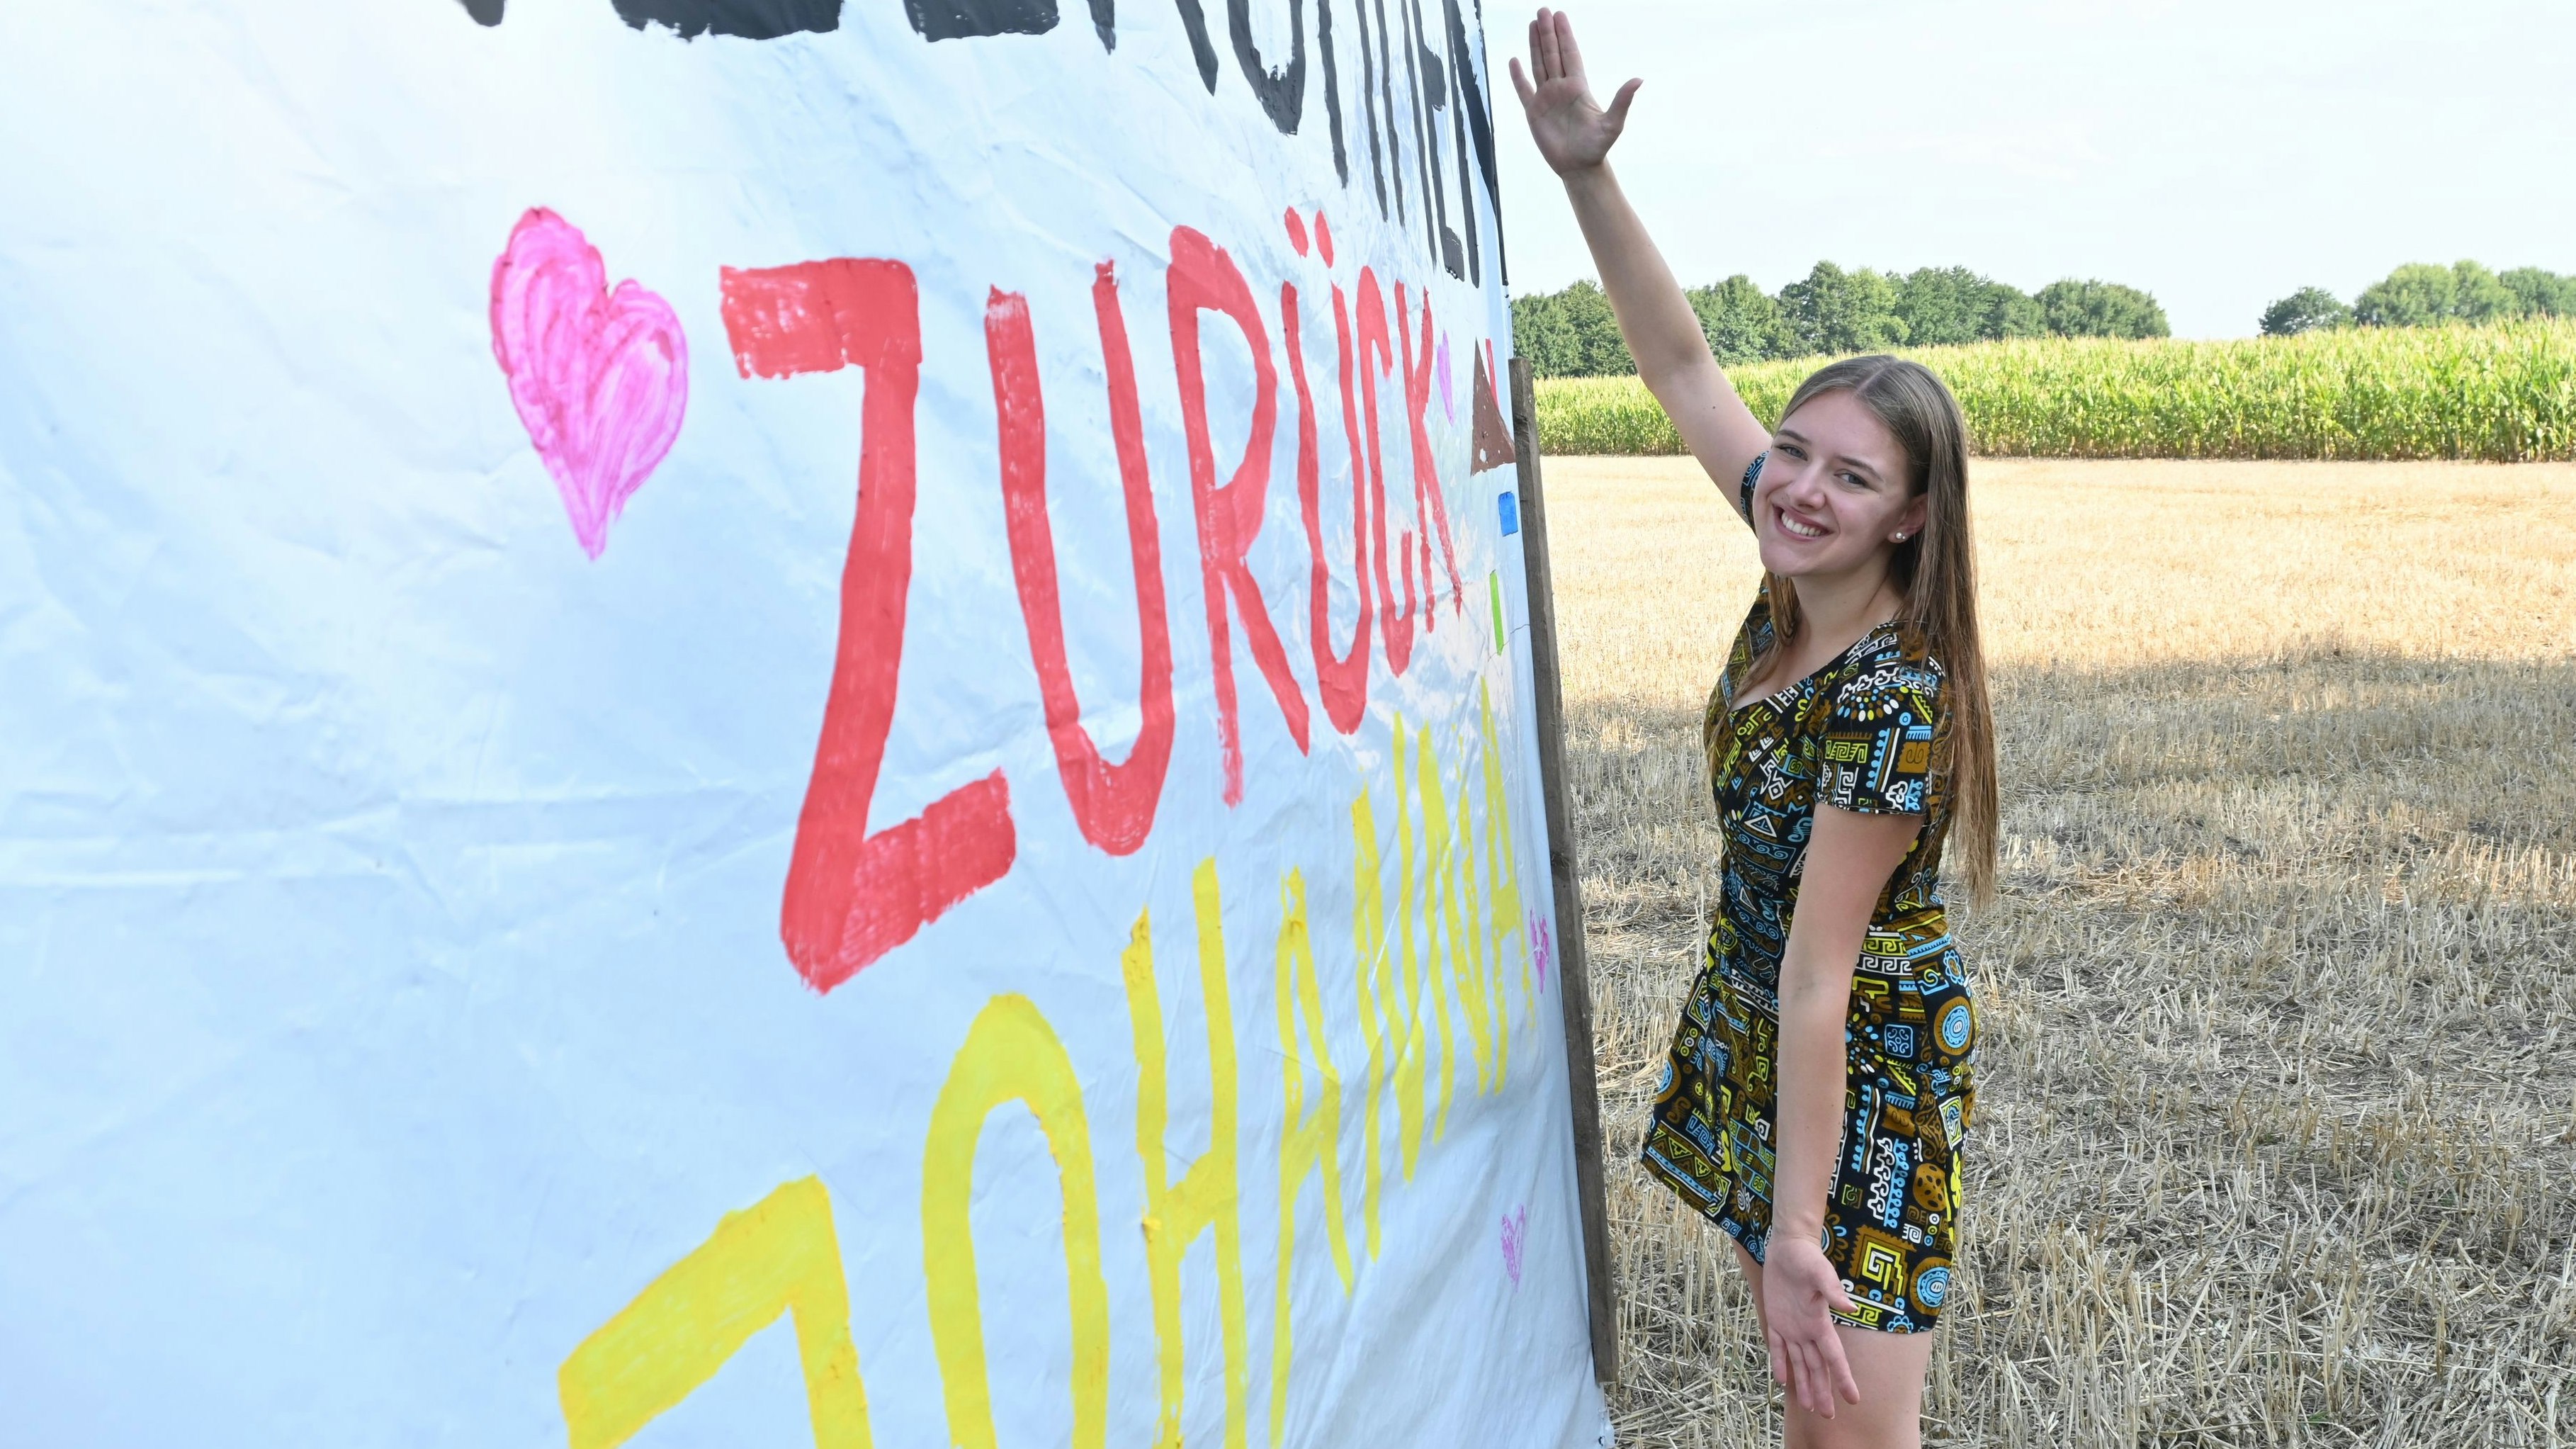 Willkommen zurück: Freunde hatten Johanna Rump mit einem großen Transparent empfangen. Foto: Vorwerk